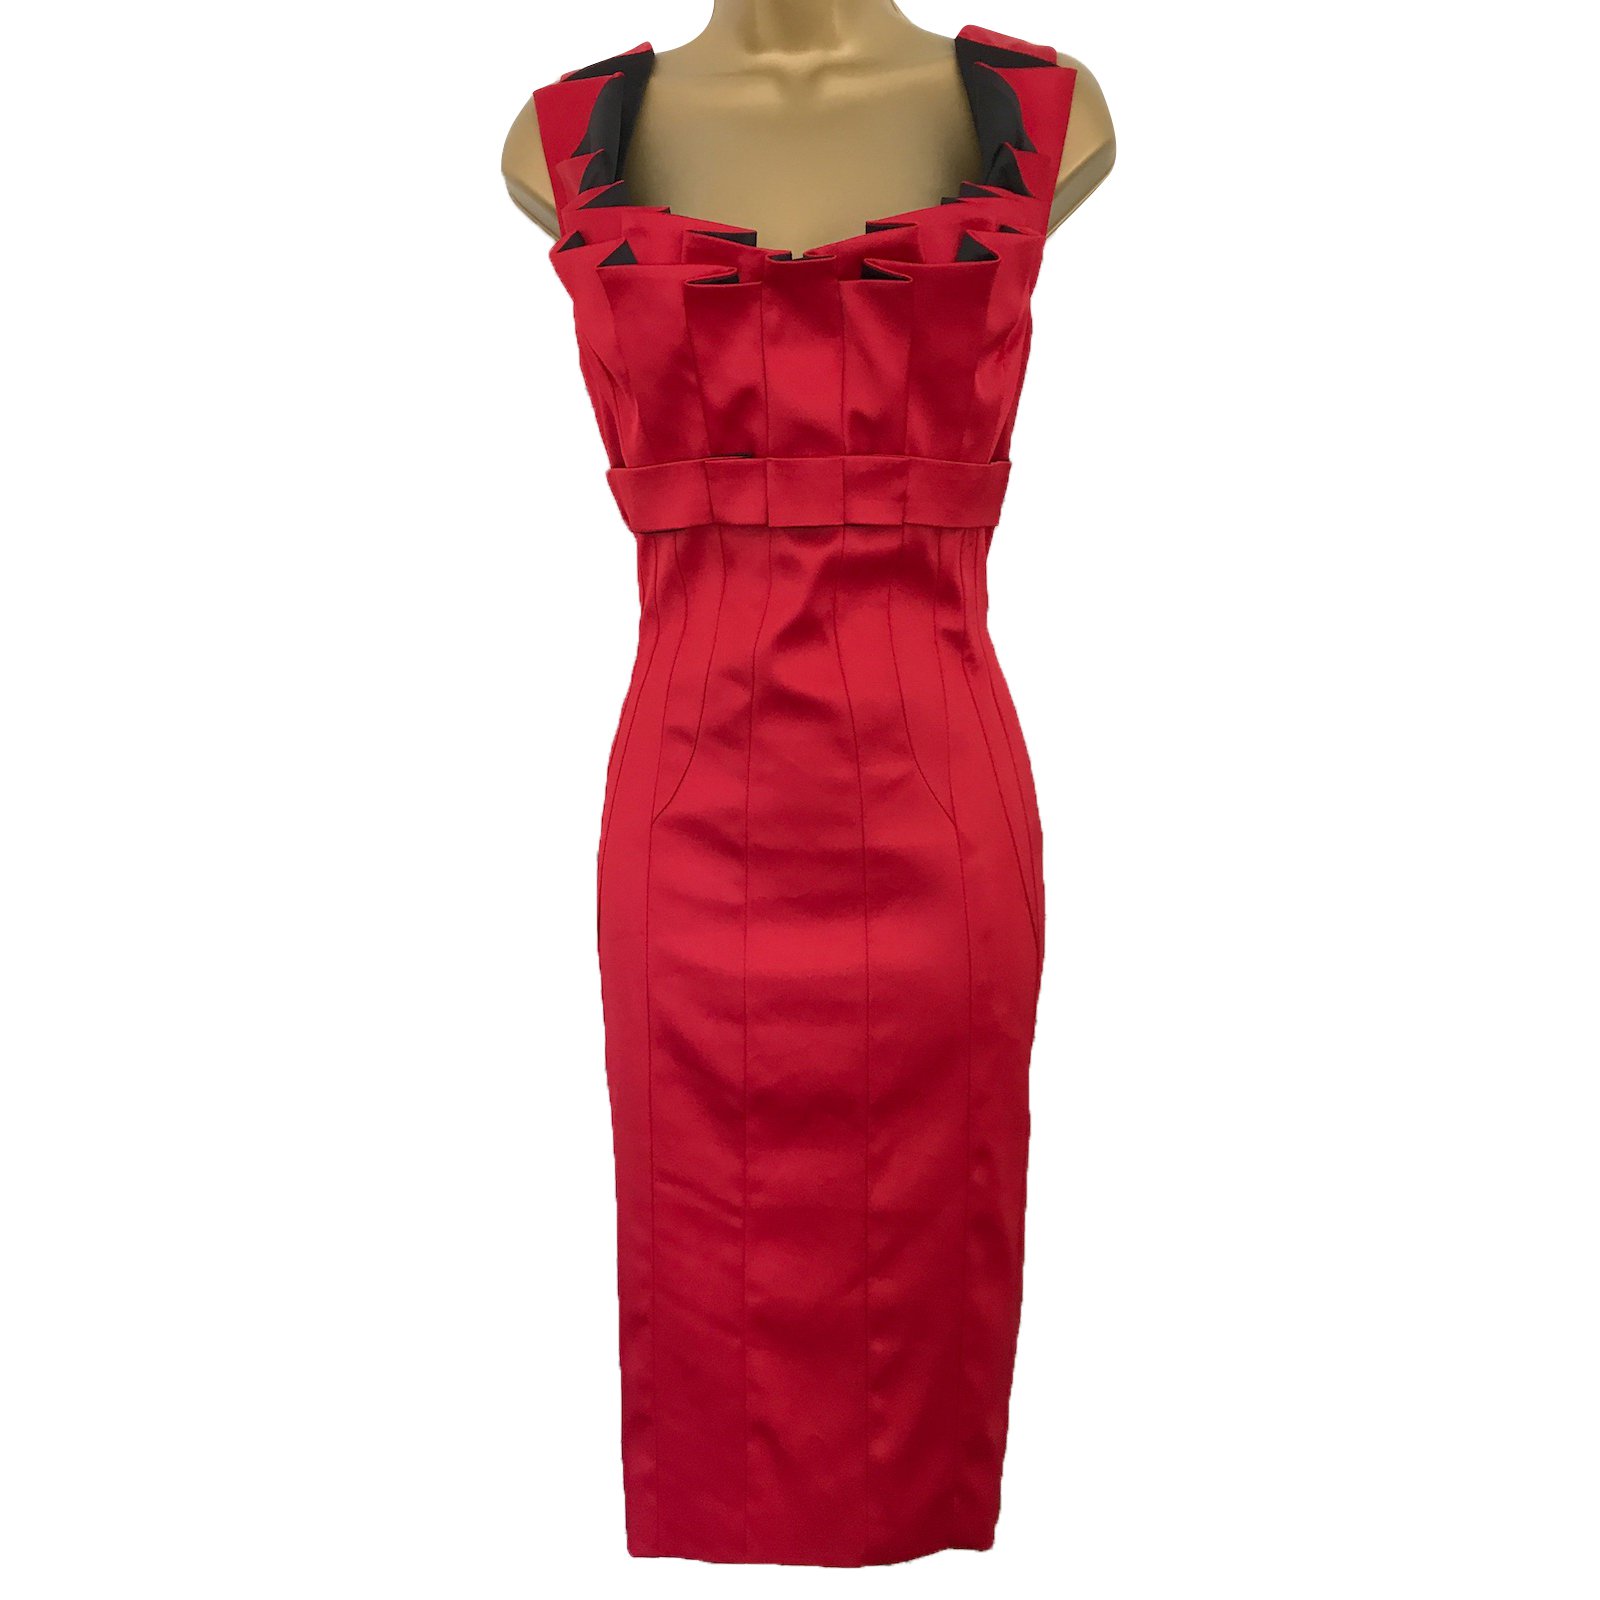 Karen Millen Dresses Red Satin ref ...